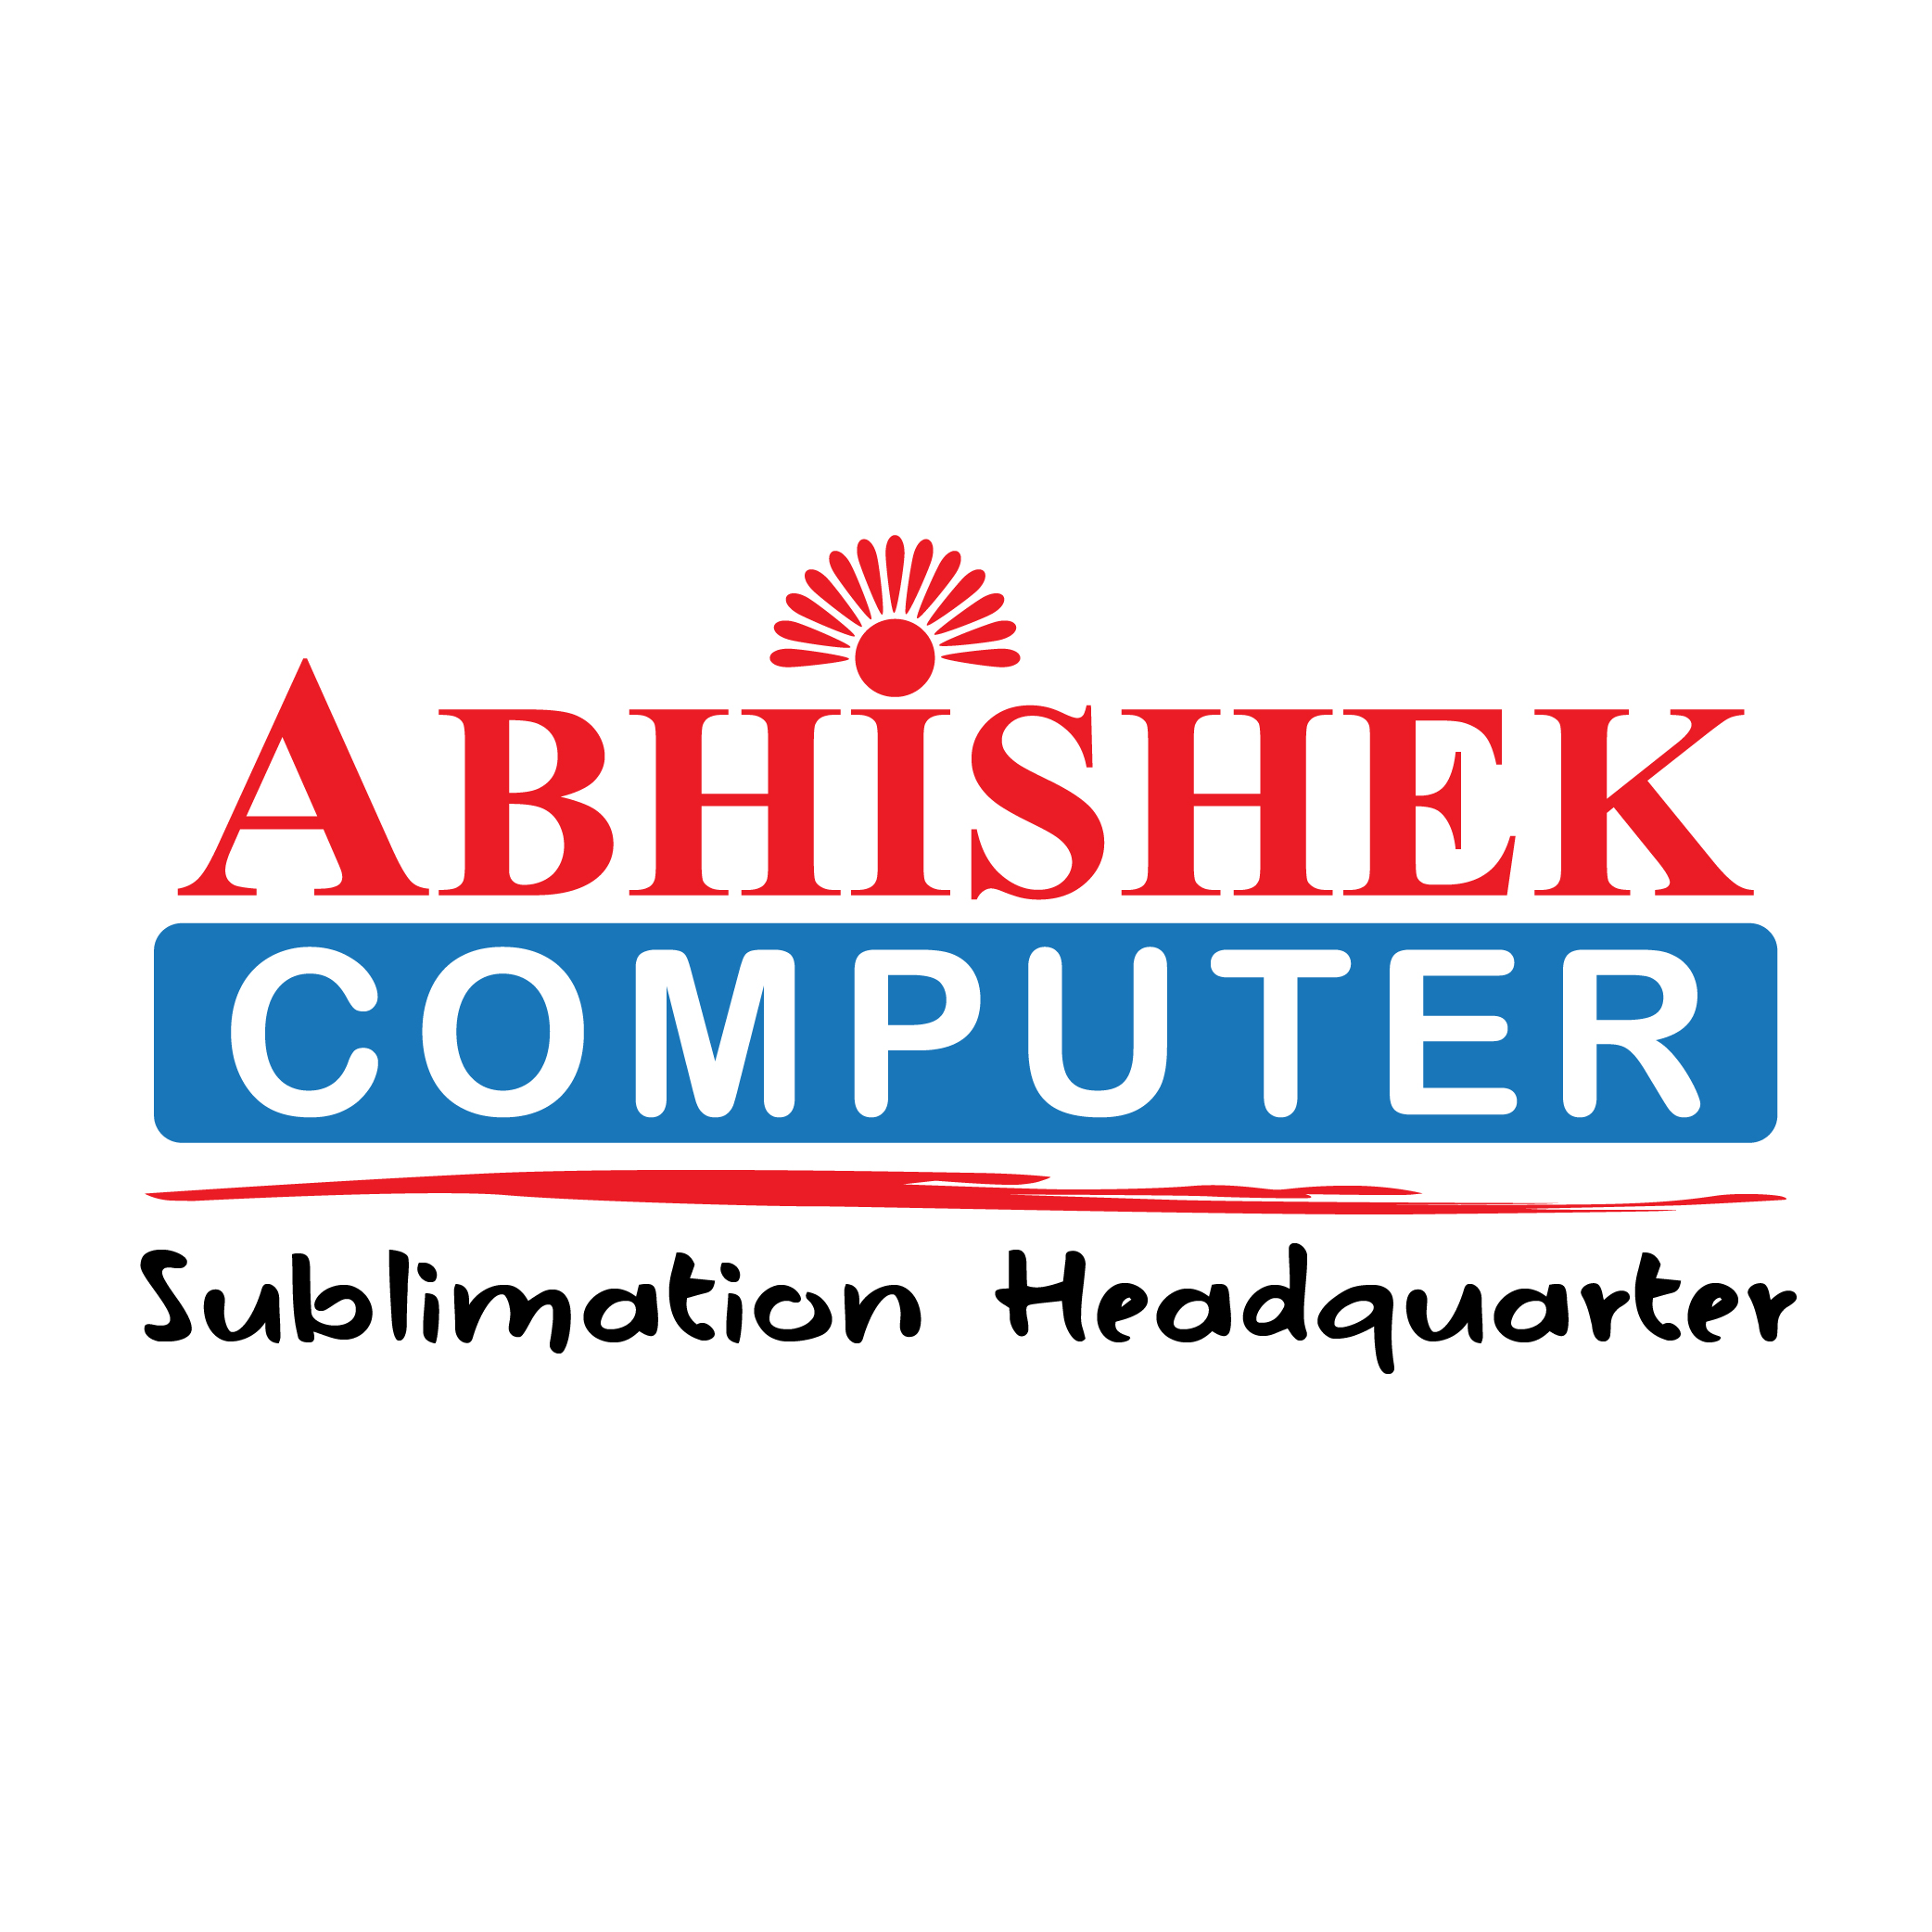 ABHISHEK COMPUTER